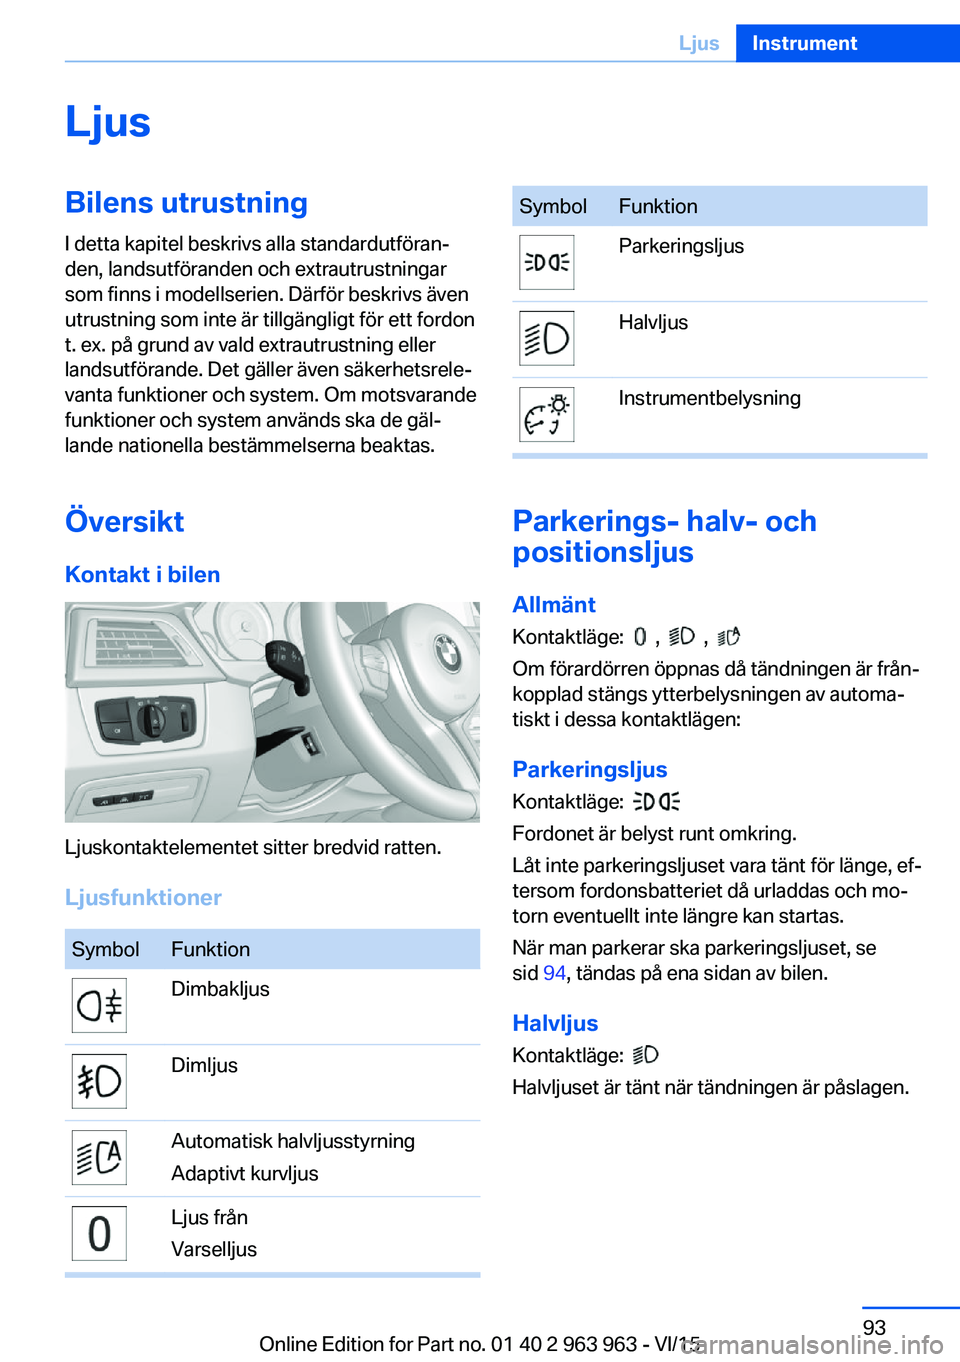 BMW 4 SERIES COUPE 2016  InstruktionsbÖcker (in Swedish) LjusBilens utrustningI detta kapitel beskrivs alla standardutföran‐
den, landsutföranden och extrautrustningar
som finns i modellserien. Därför beskrivs även
utrustning som inte är tillgängli